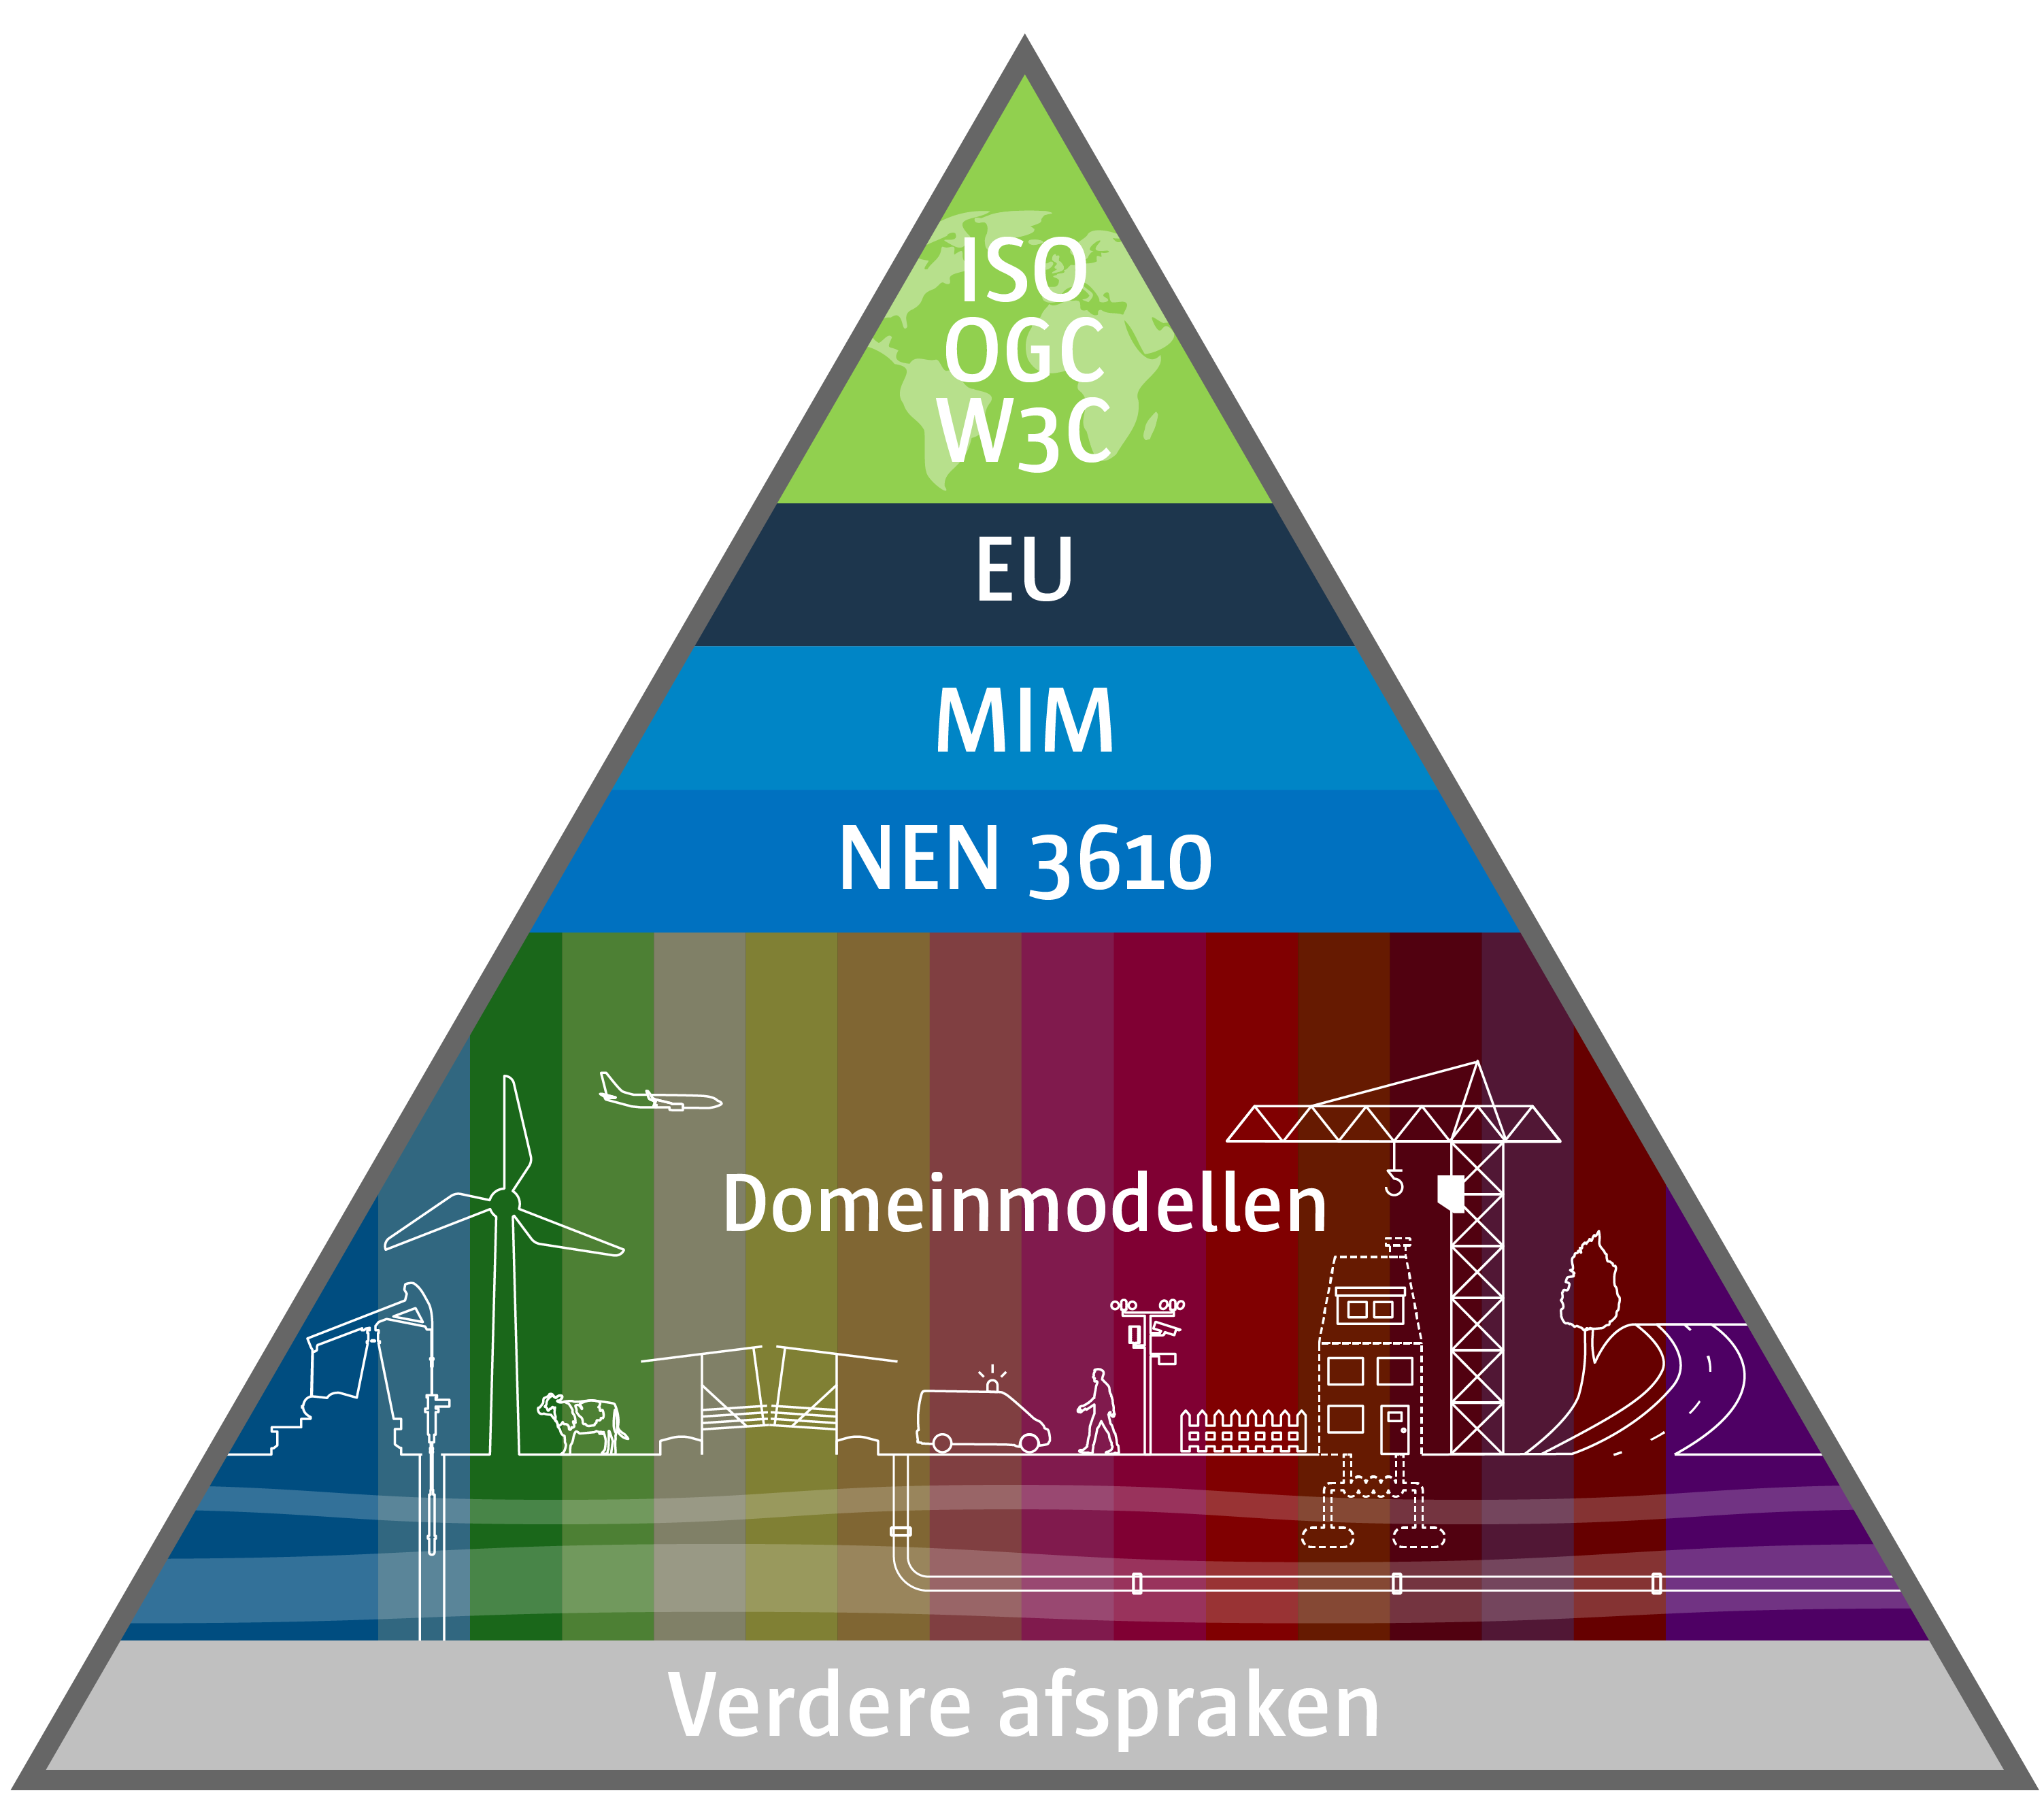 Basismodel voor geo-informatie met sectorale standaard voor de
ruimtelijke ordening